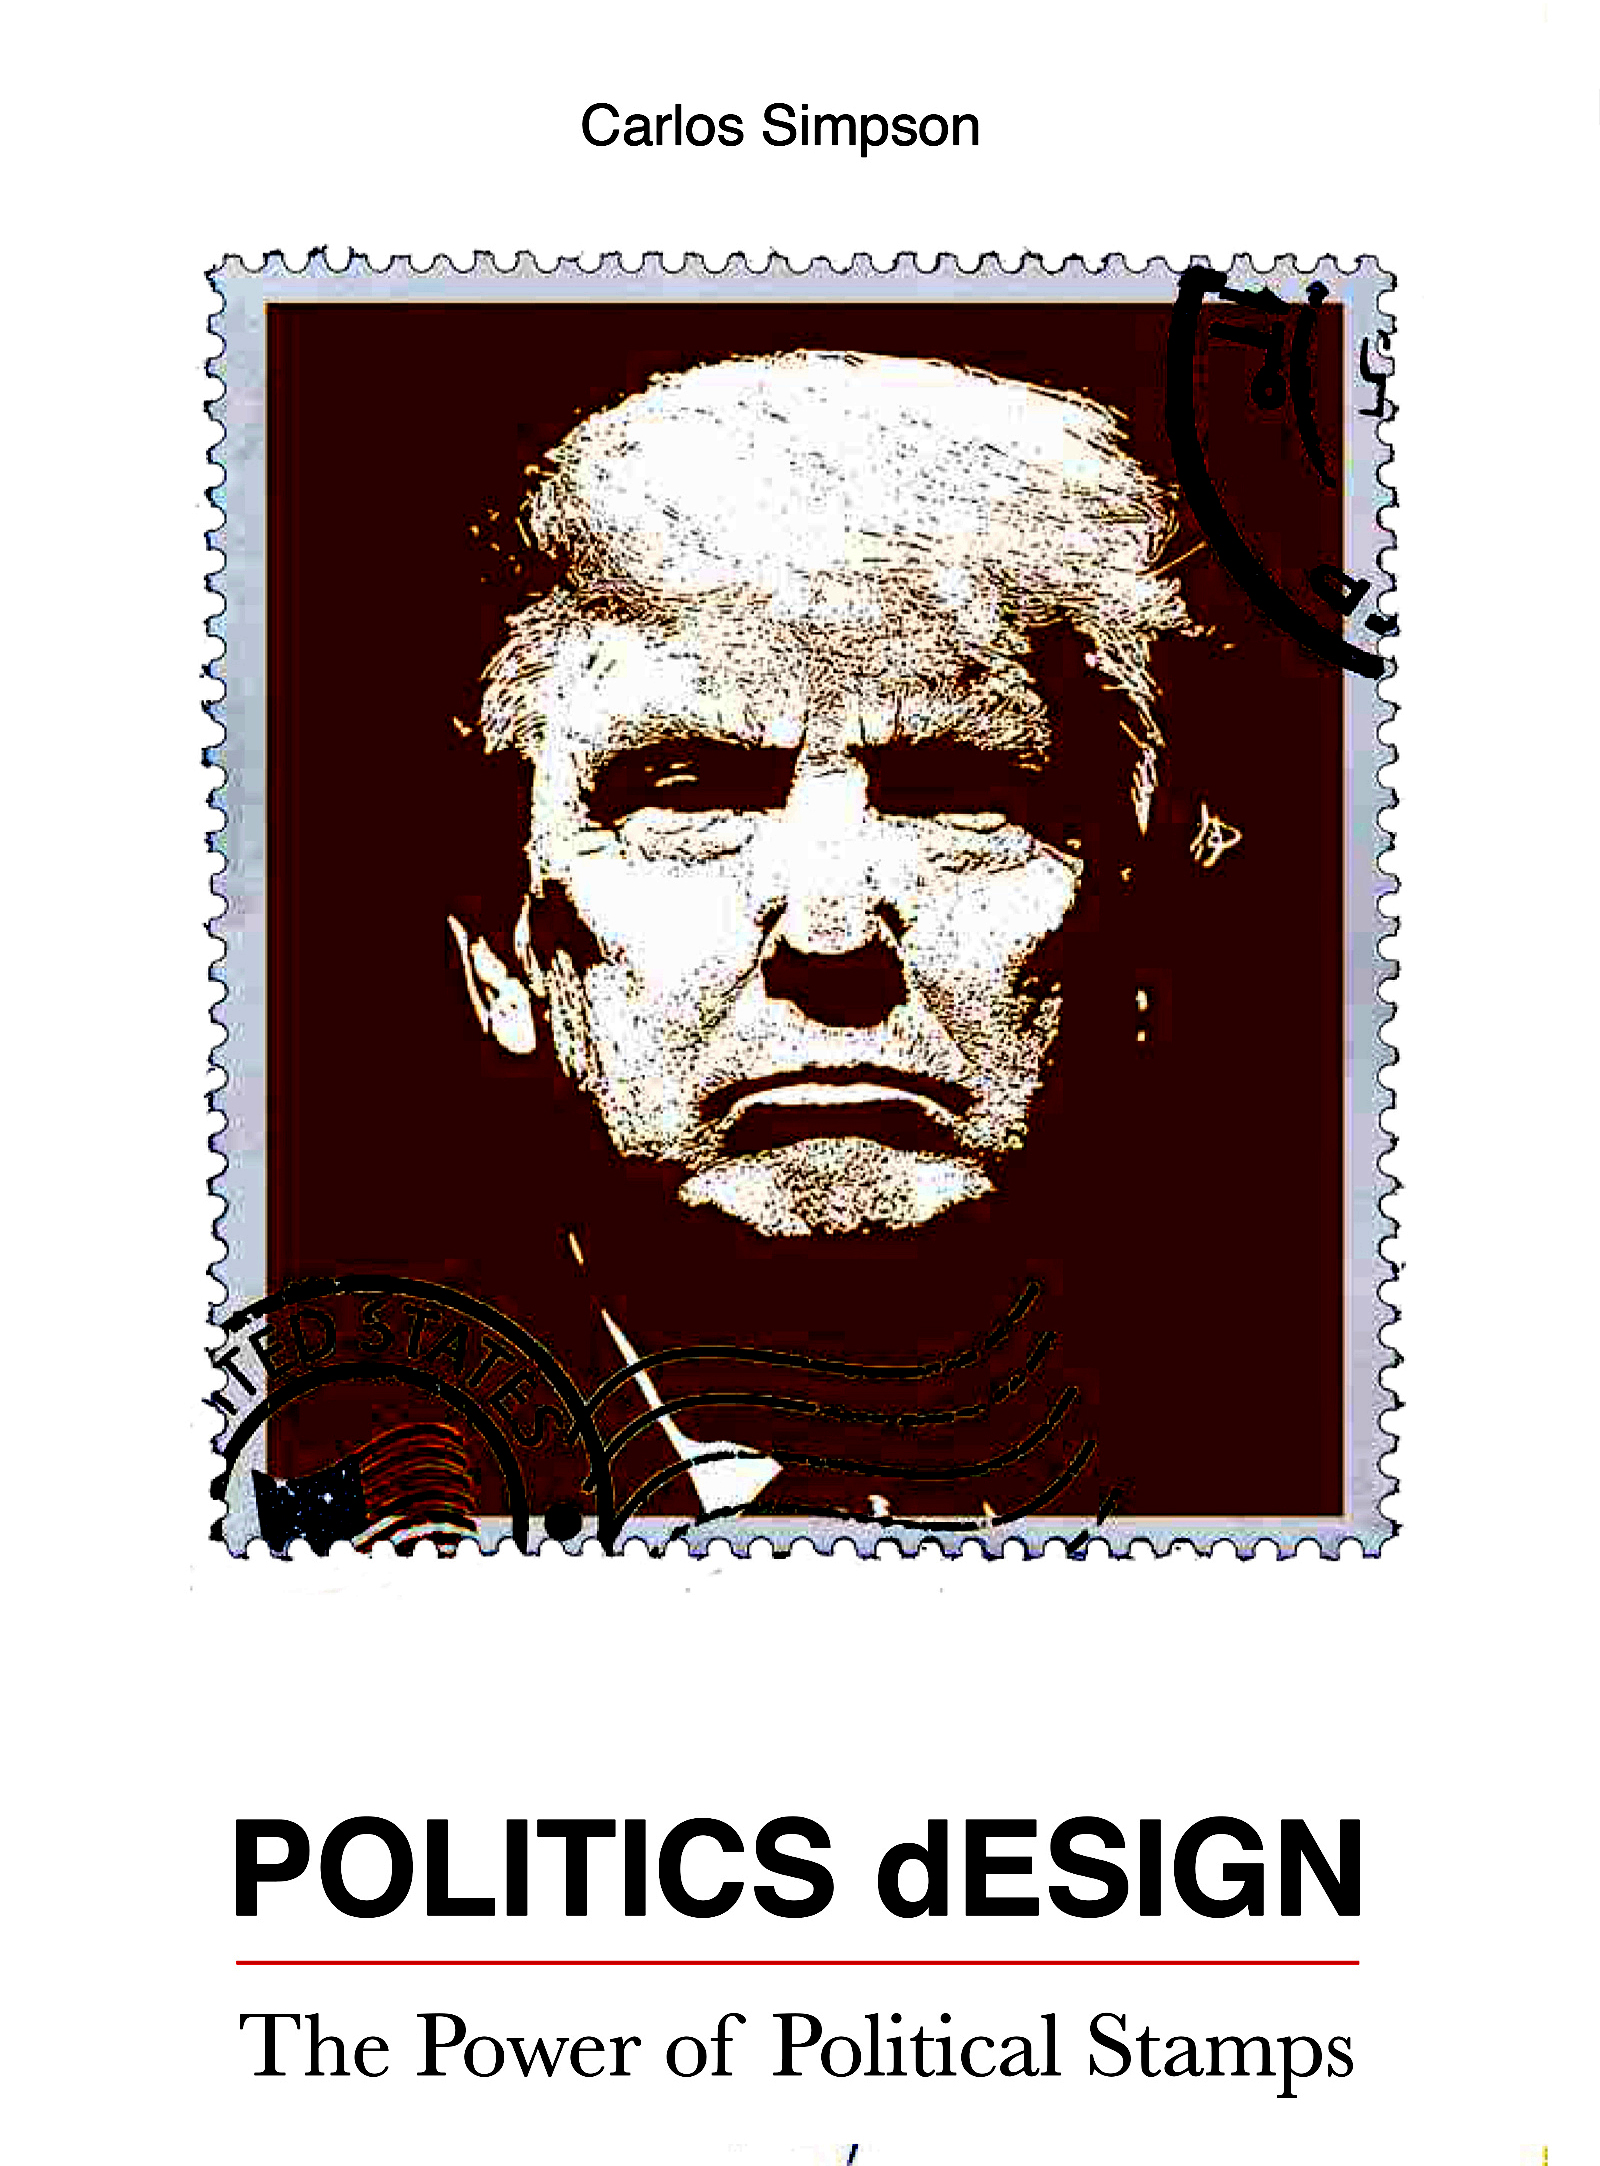 Rich result on Google when search for "Politics Design, Carlos Simpson Design Studio"